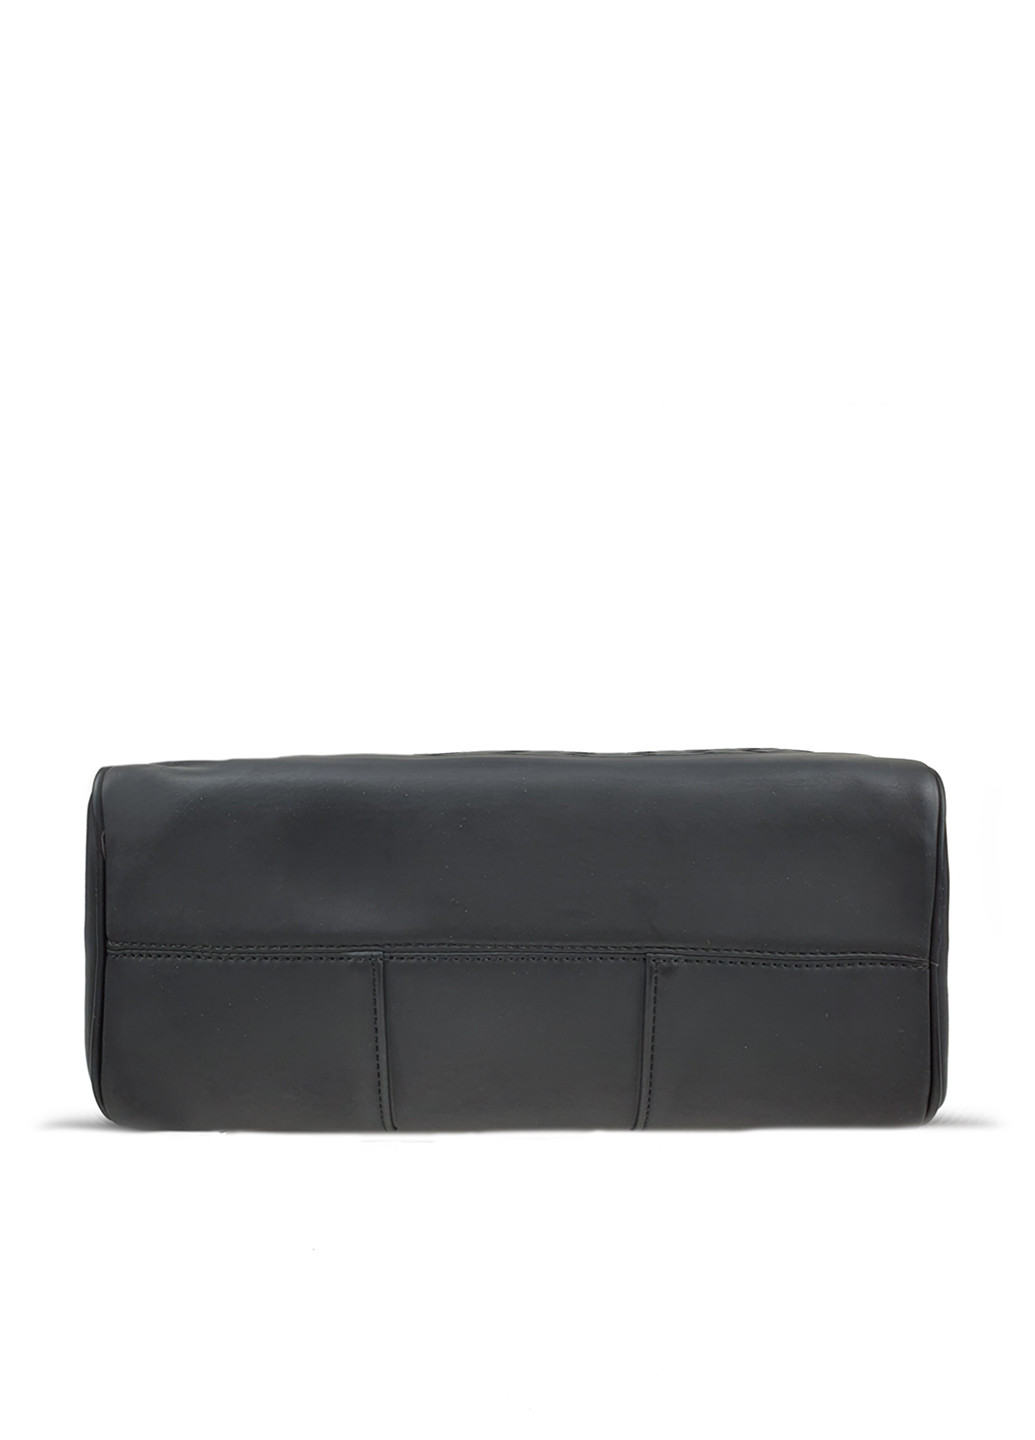 Большой мужской рюкзак черный кожаный Fashion рюкзак (251825964)